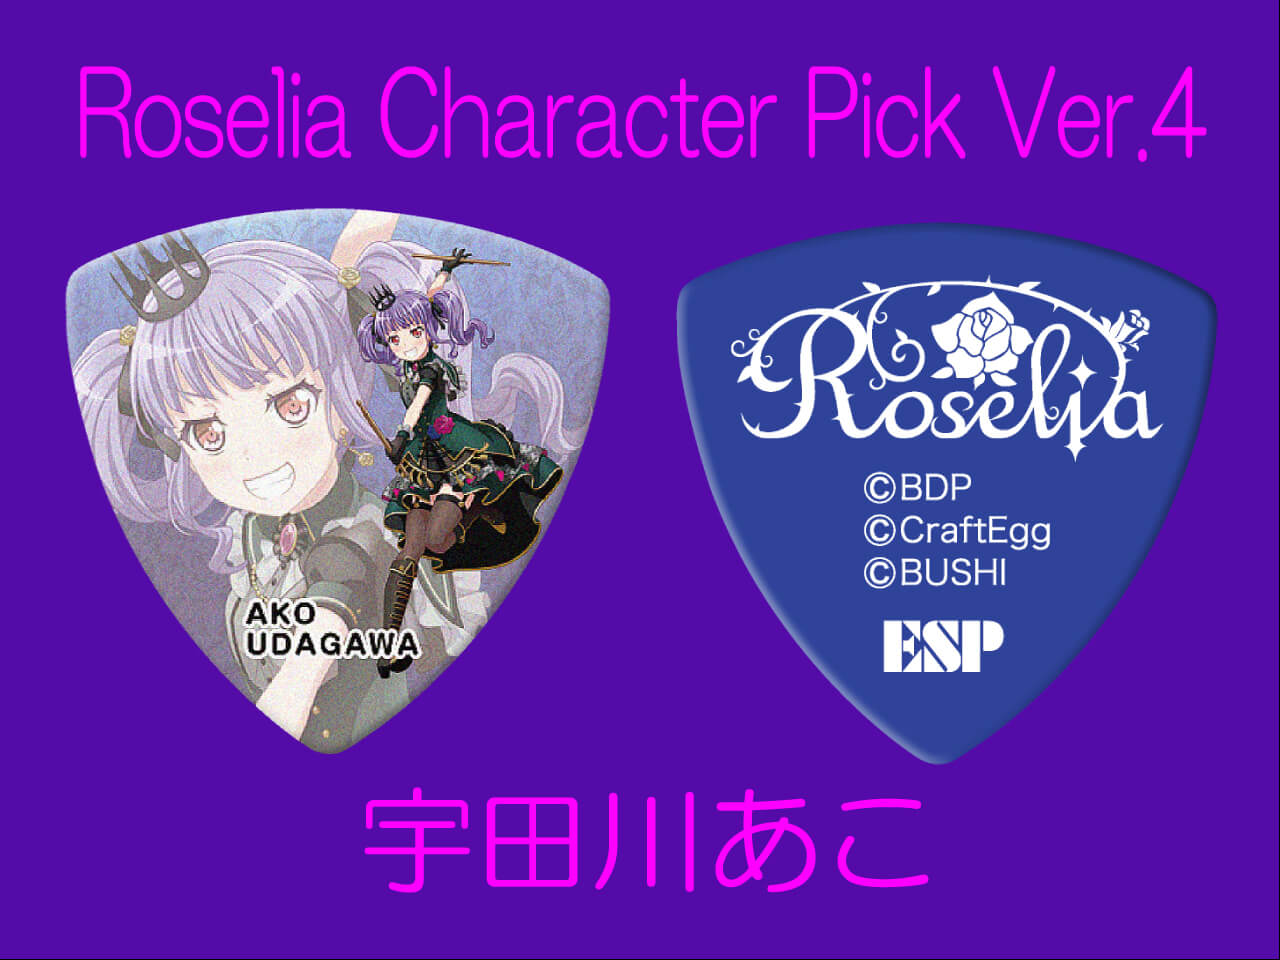 【ESP×BanG Dream!コラボピック】Roselia Character Pick Ver.4 "宇田川あこ"（GBP Ako Roselia 4）＆”ハメパチ” セット